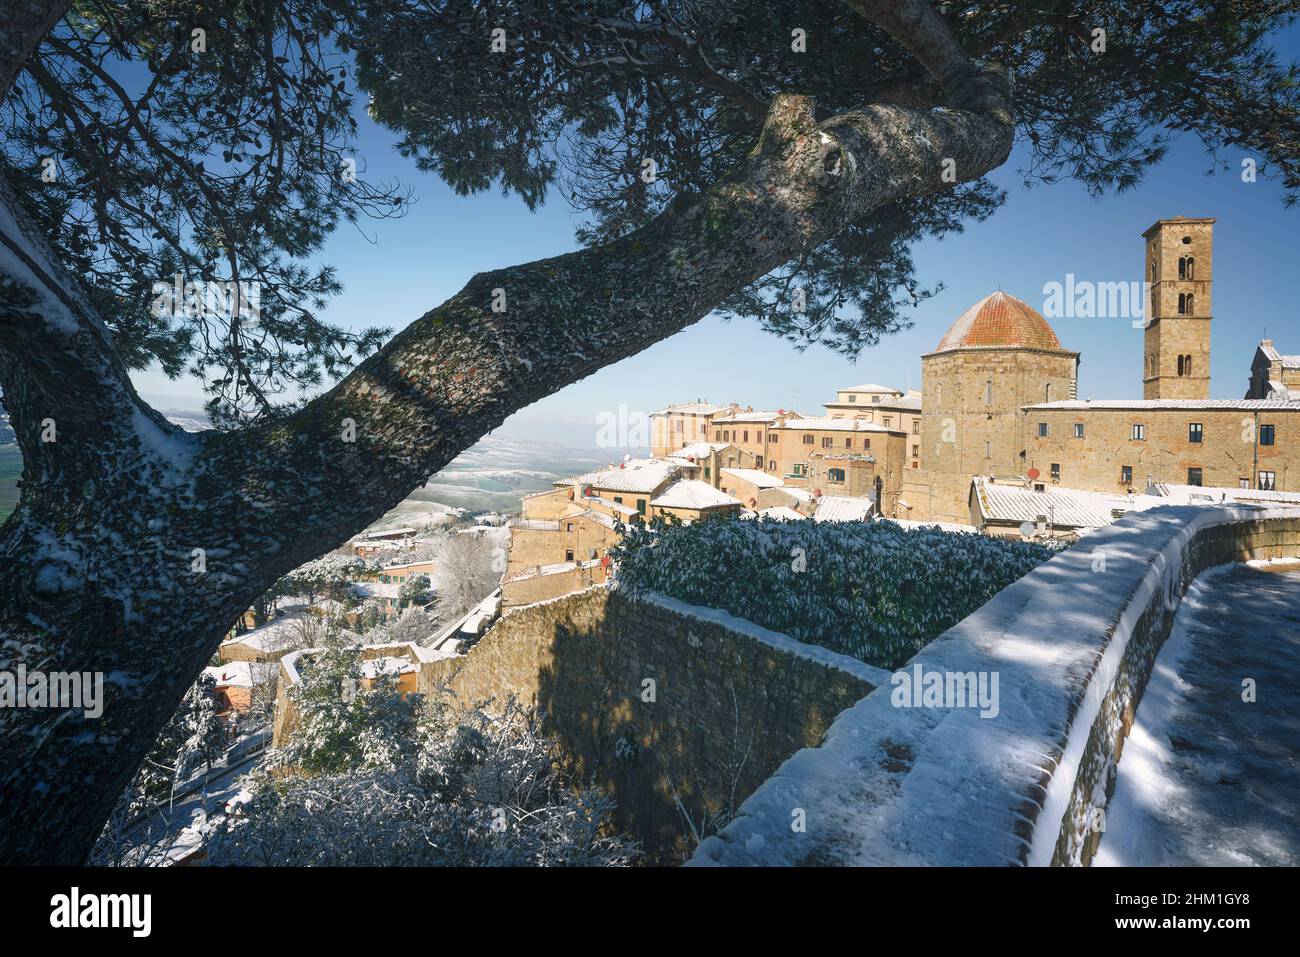 Volterra ville enneigée en hiver et un arbre.Province de Pise, région de Toscane, Italie, Europe. Banque D'Images